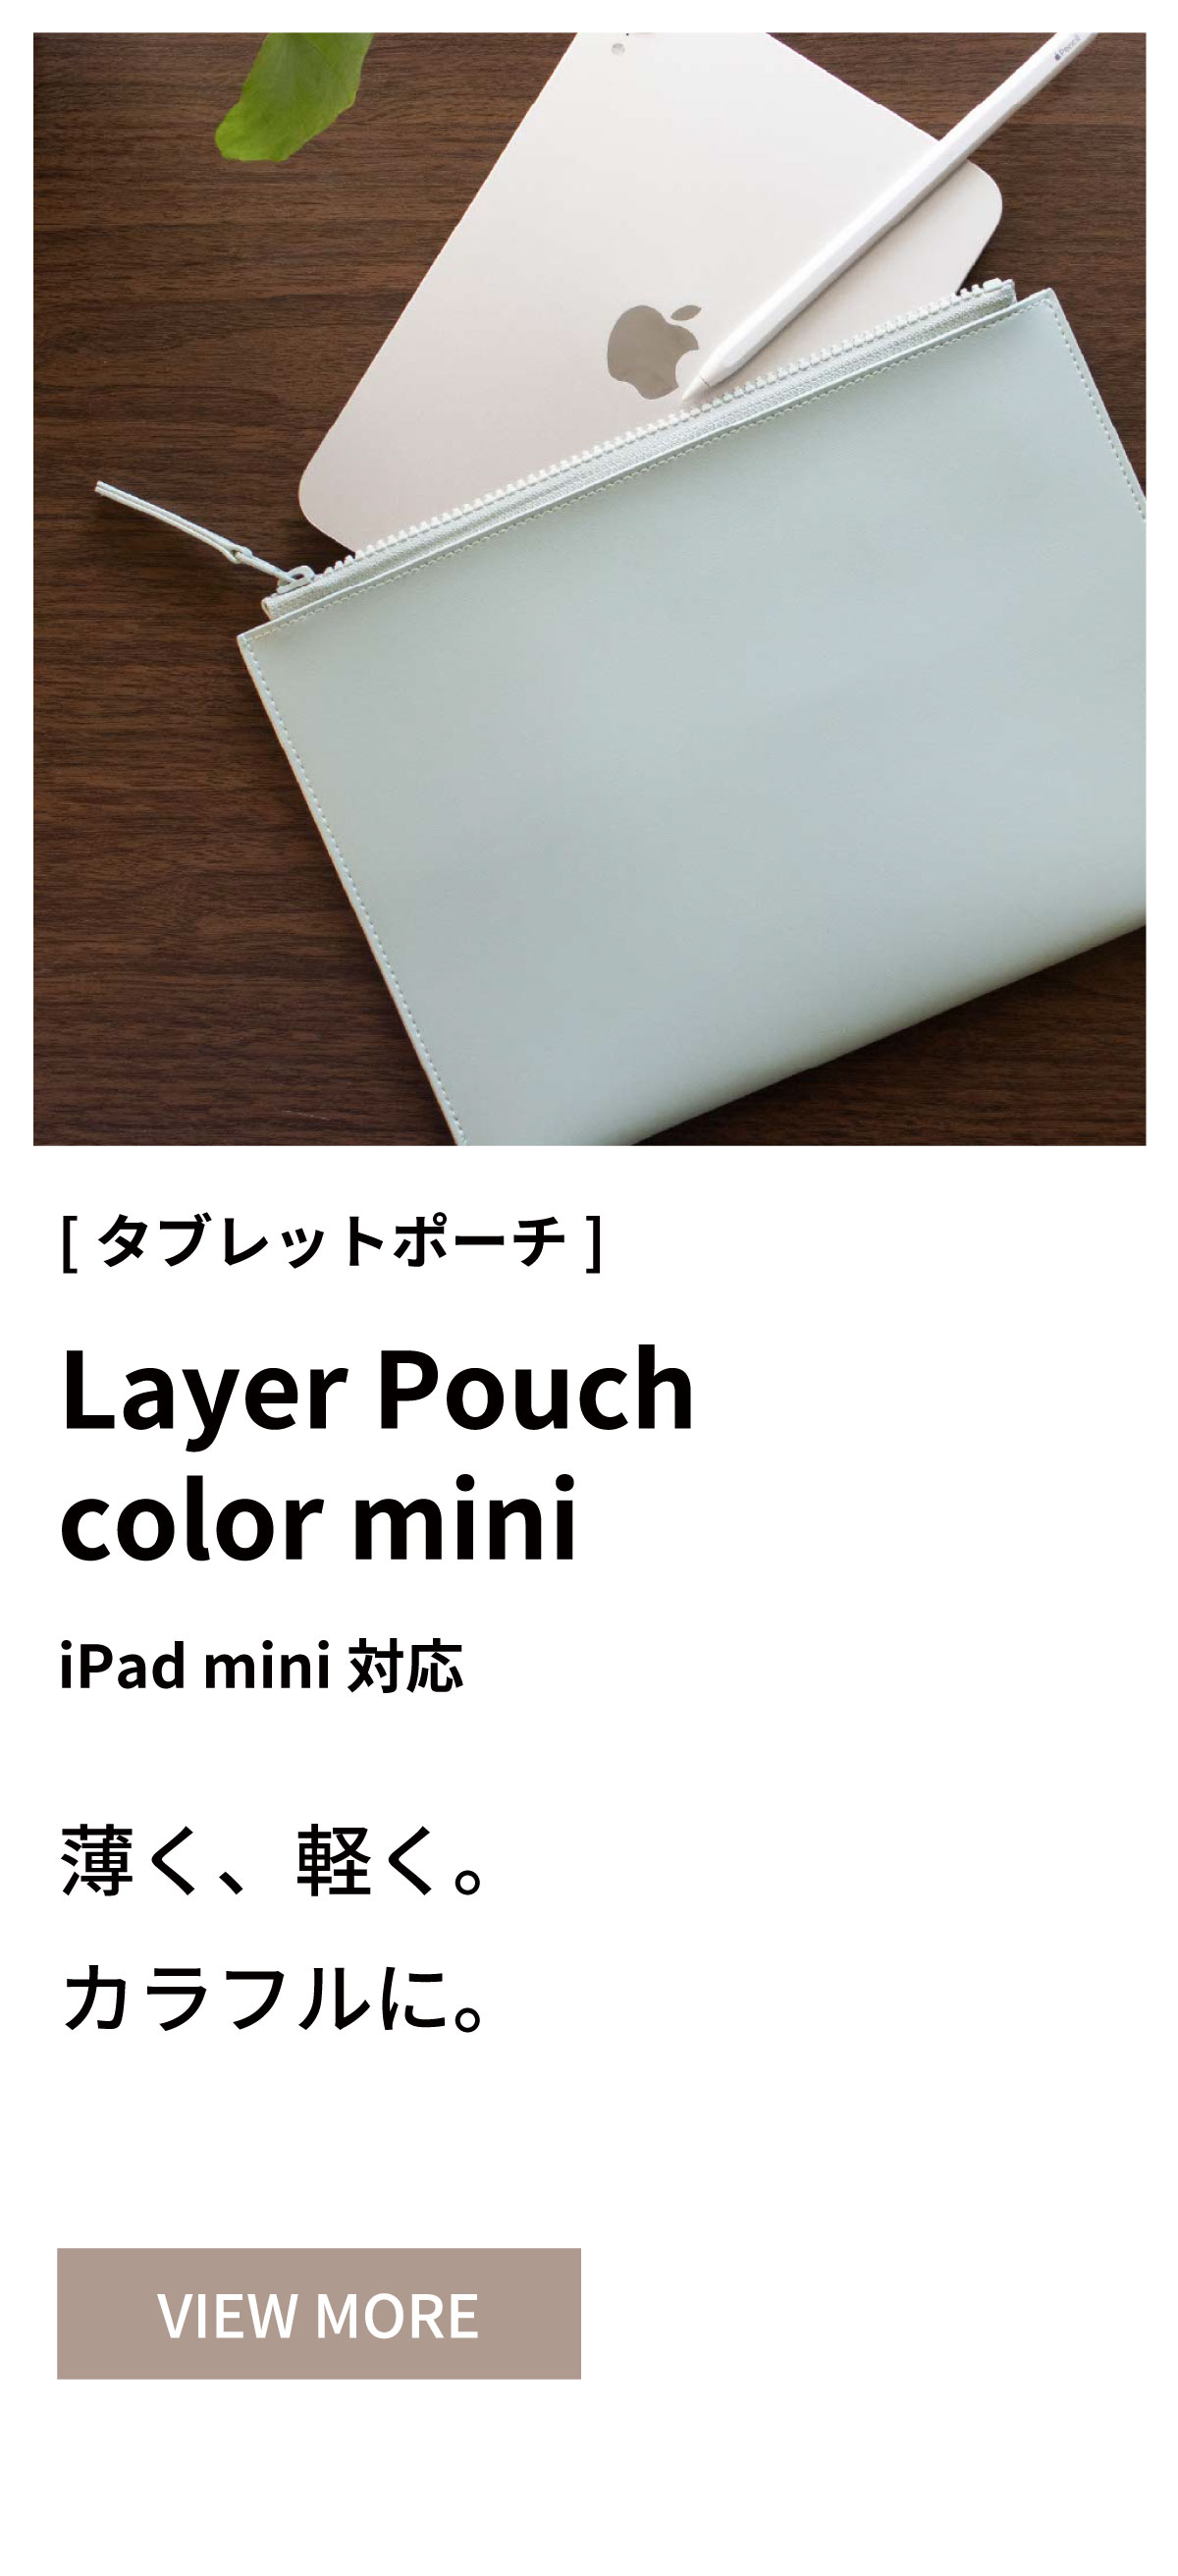 Layer Pouch color mini